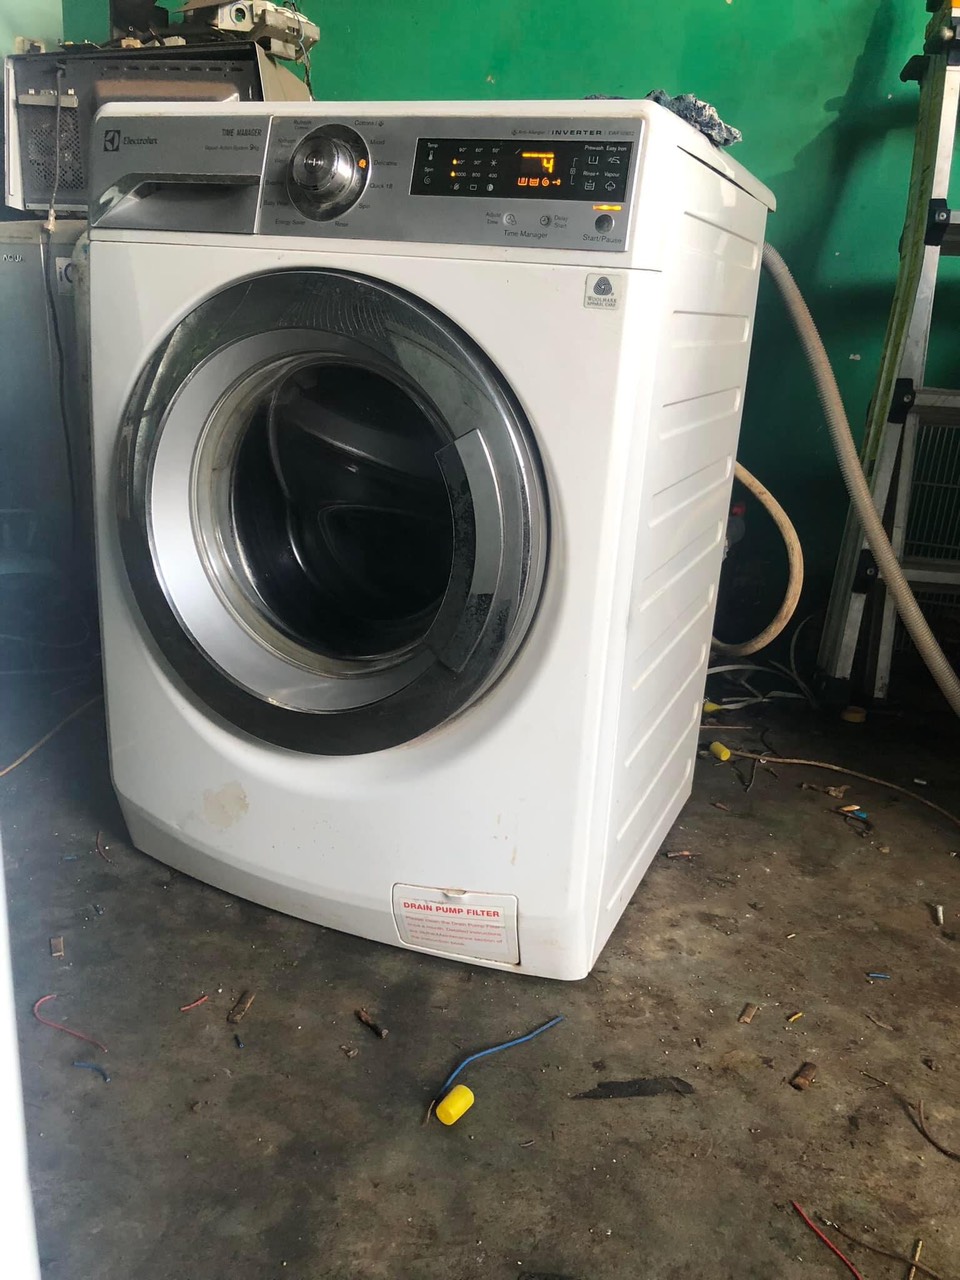 Nhận thấy nhu cầu sử dụng dịch vụ sửa máy giặt càng ngày càng tăng cao.#1 Địa chỉ sửa máy giặt Bình Thọ Thủ Đức nhận sửa máy giặt ở những tuyến đường